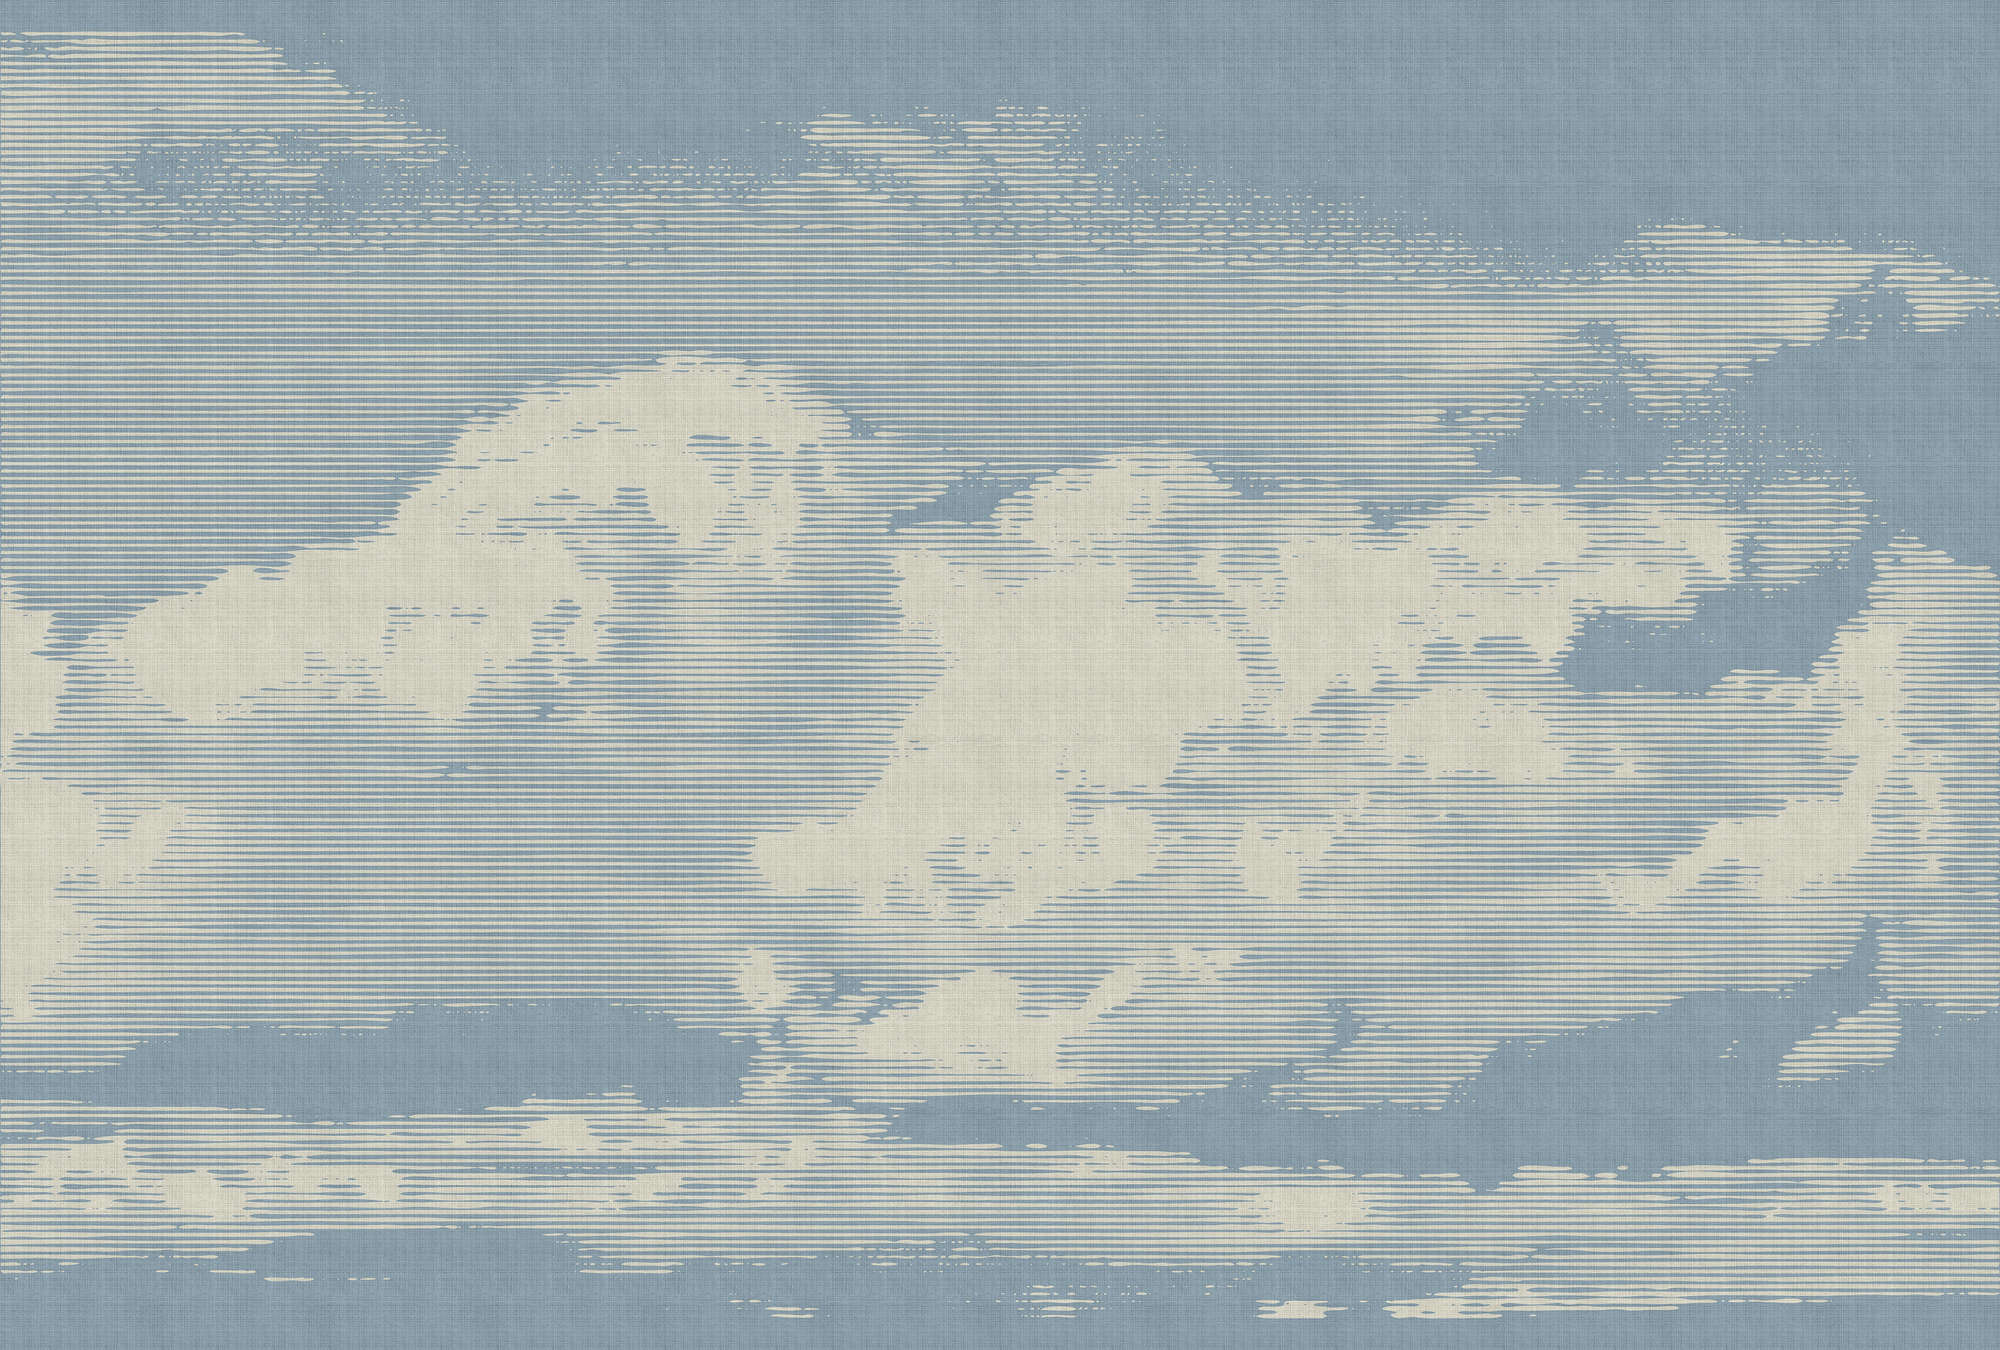             Clouds 1 - Papier peint céleste avec motif de nuages en lin naturel structuré - beige, bleu | nacre intissé lisse
        